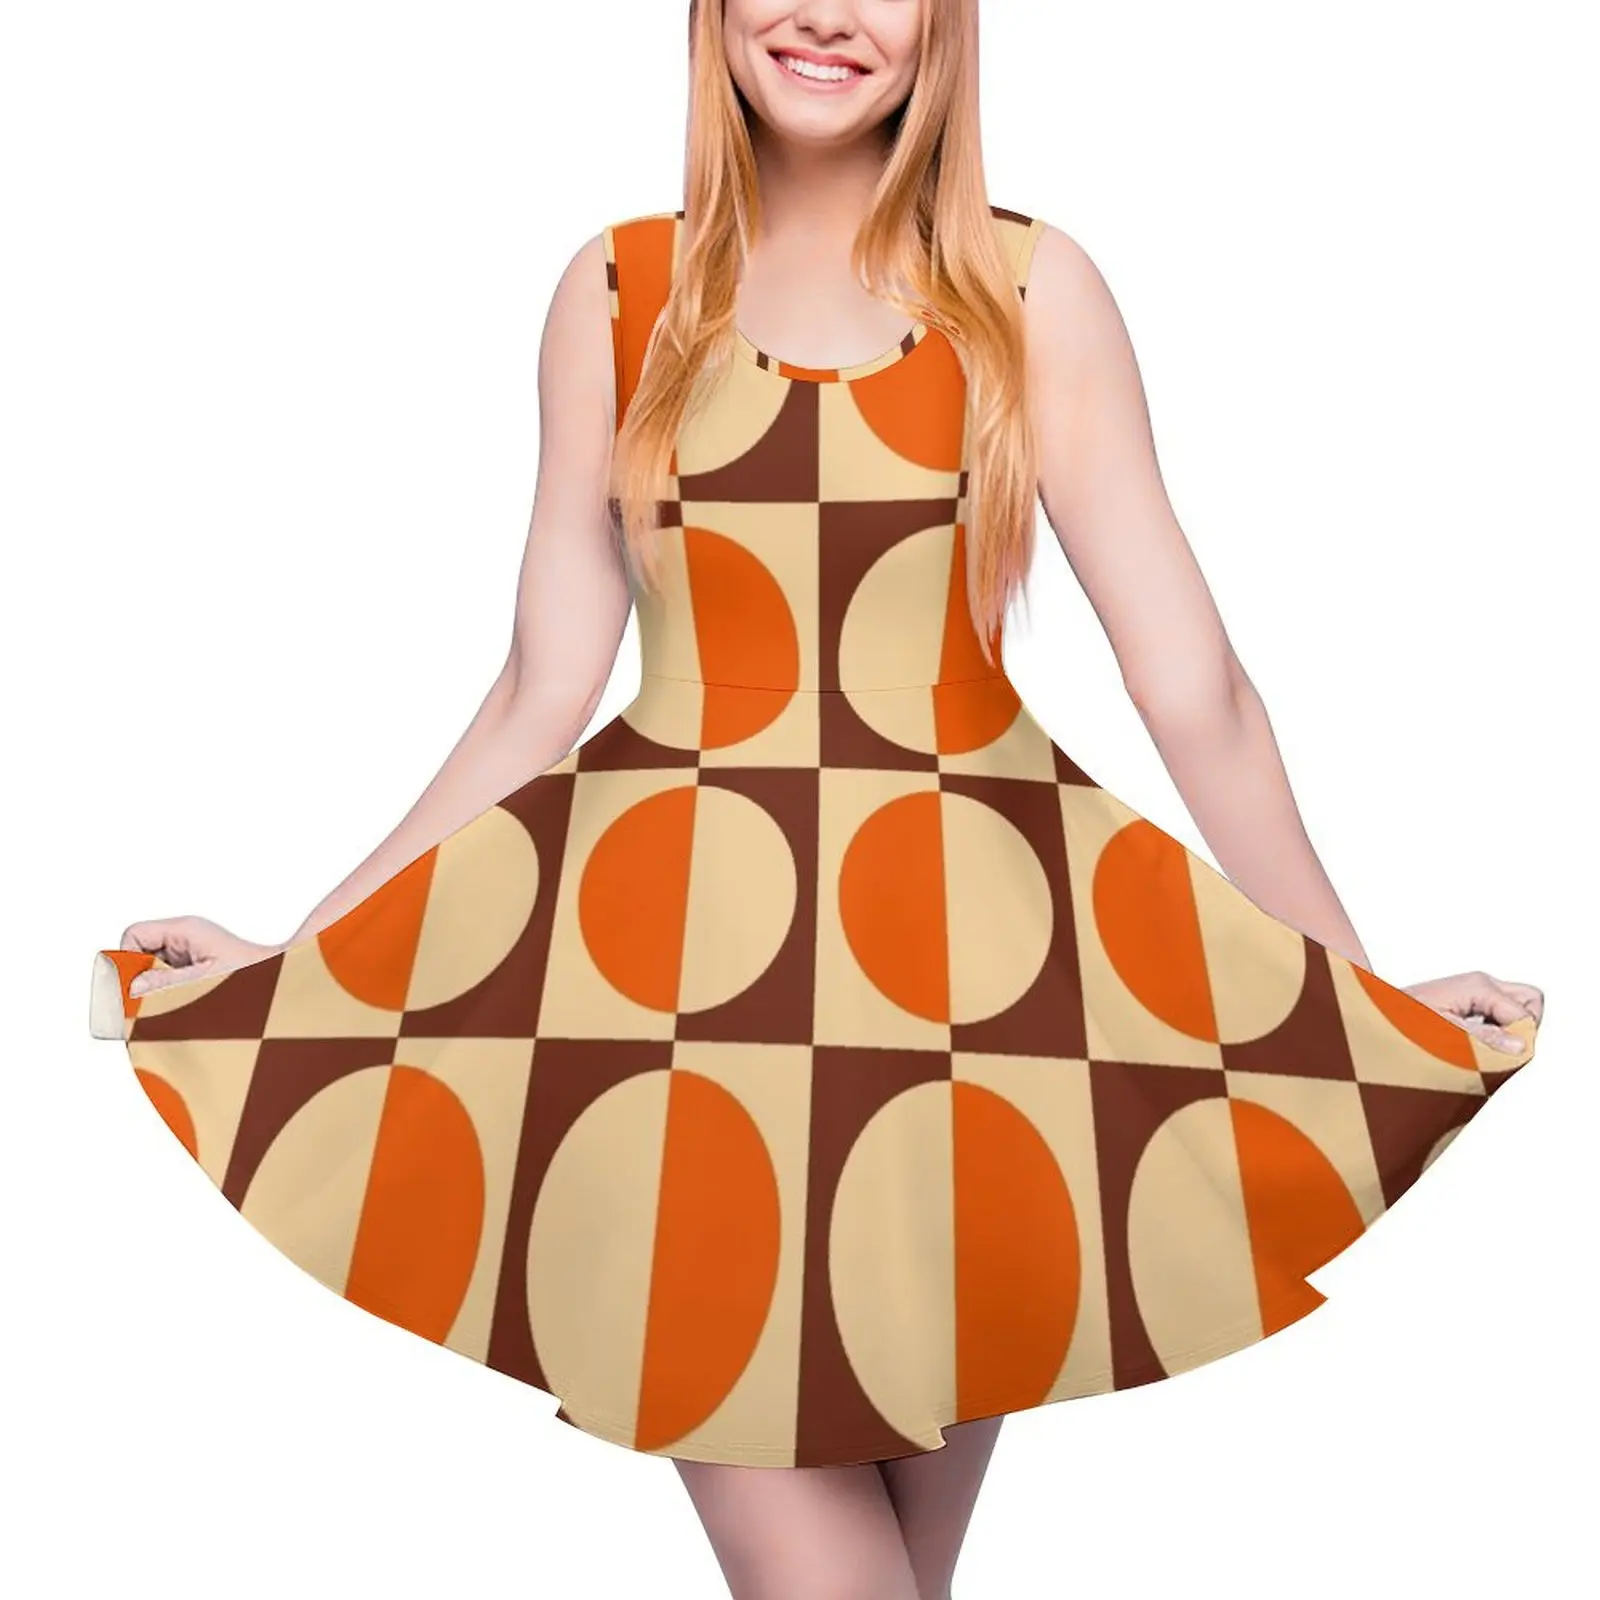 

Женское винтажное платье без рукавов, оранжевое, коричневое и бежевое платье с геометрическим принтом в стиле ретро 70-х годов, платье для особых случаев